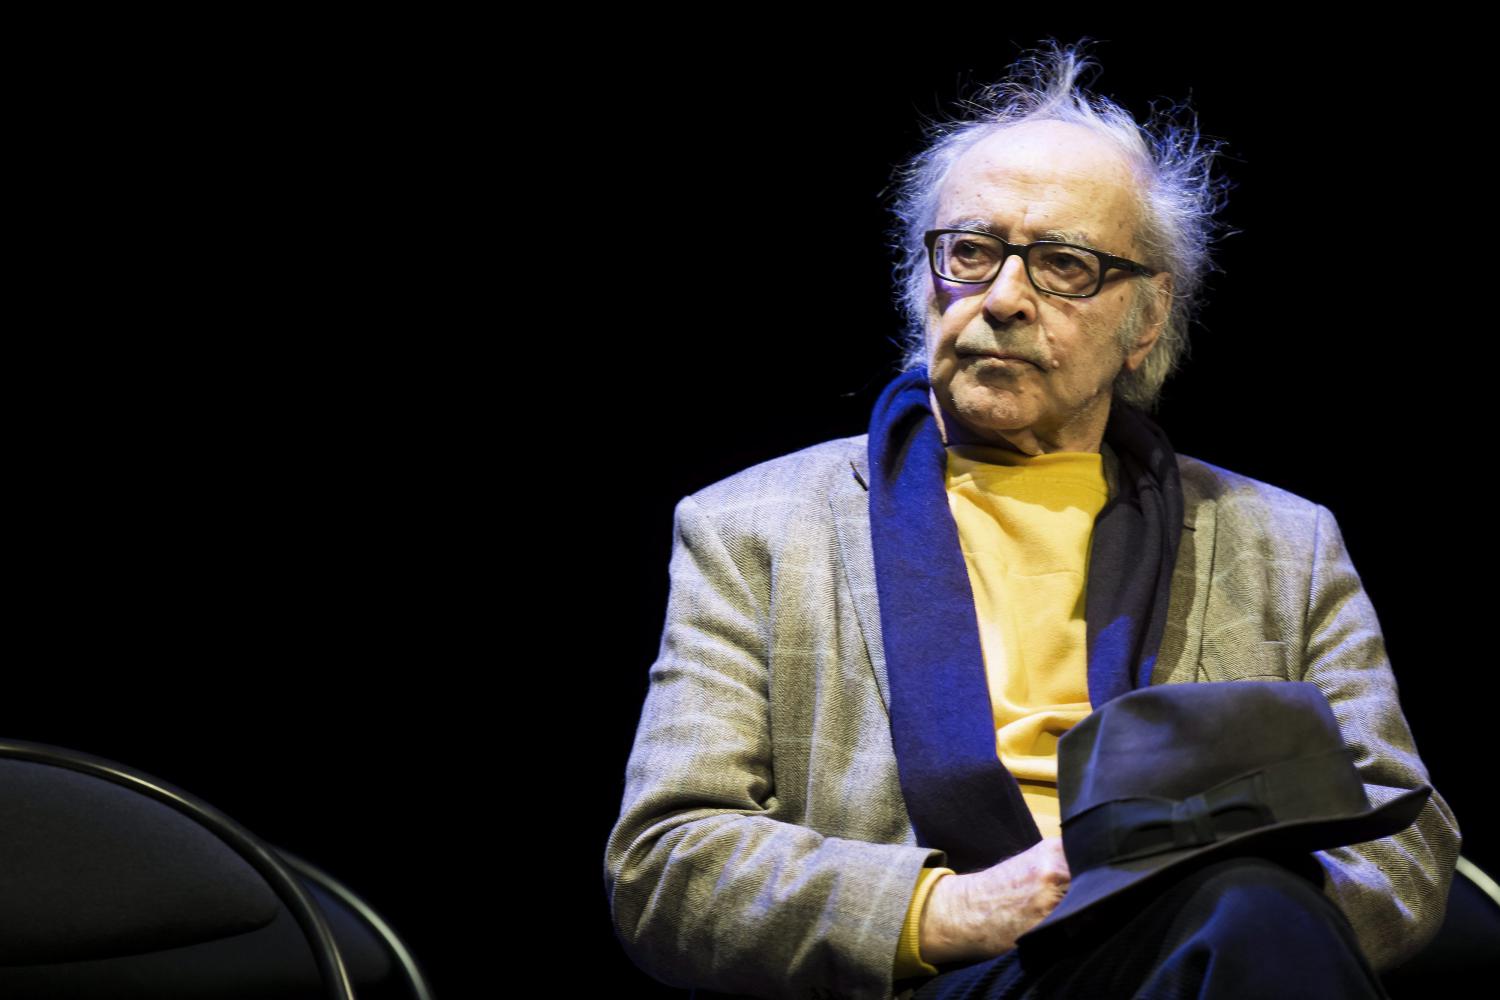 Jean-Luc Godard 2013 in Lausanne